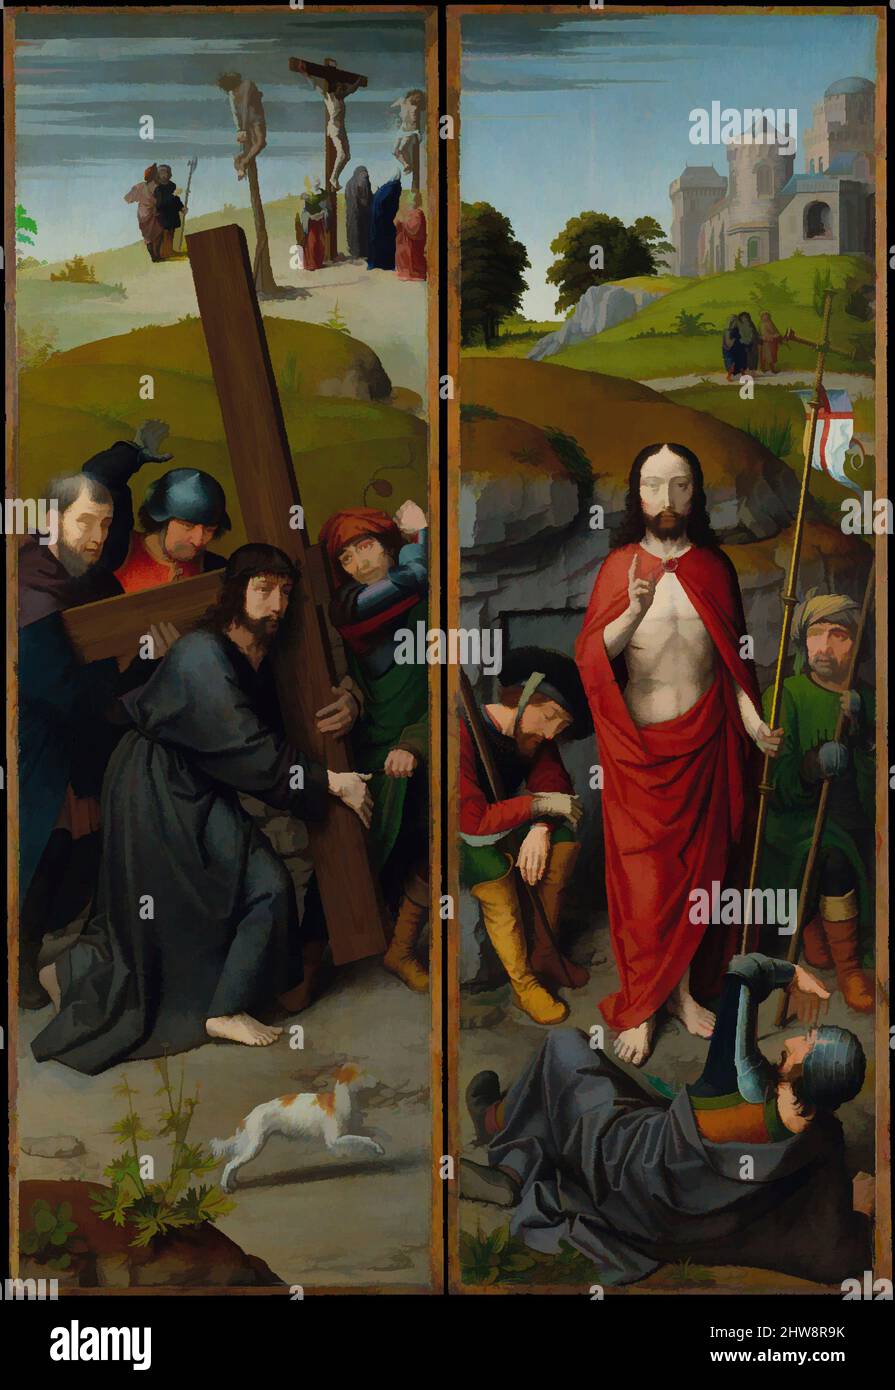 Arte ispirata da Cristo che porta la Croce, con la Crocifissione; la Risurrezione, con i pellegrini di Emmaus, ca. 1510, olio su pannello di quercia, ala sinistra: 34 1/2 x 11 5/8 poll. (87,7 x 29,5 cm), superficie verniciata 34 x 11 poll. (86,4 x 27,9 cm); ala destra: 34 1/2 x 11 3/4 poll. (87,6 x 30 cm, opere classiche modernizzate da Artotop con un tuffo di modernità. Forme, colore e valore, impatto visivo accattivante sulle emozioni artistiche attraverso la libertà delle opere d'arte in modo contemporaneo. Un messaggio senza tempo che persegue una nuova direzione selvaggiamente creativa. Artisti che si rivolgono al supporto digitale e creano l'NFT Artotop Foto Stock